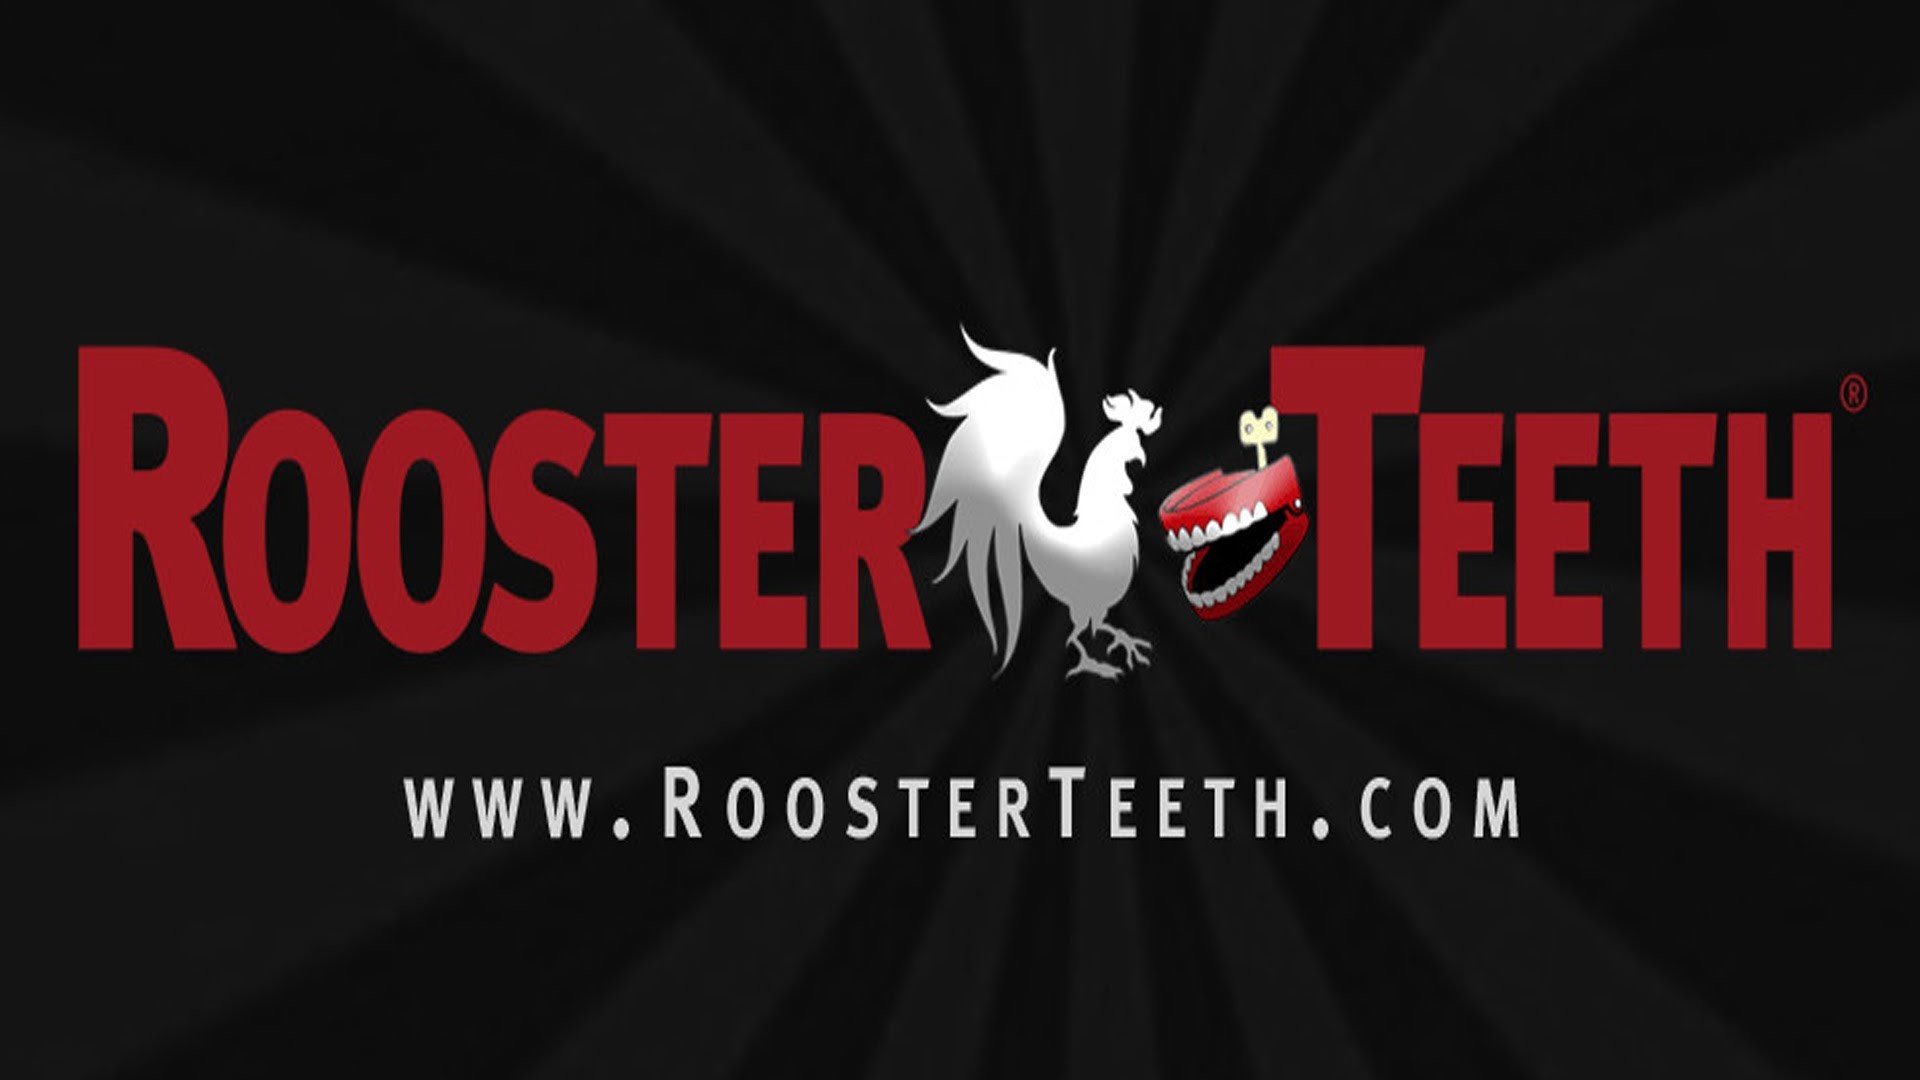 Rule 34 Rooster Teeth